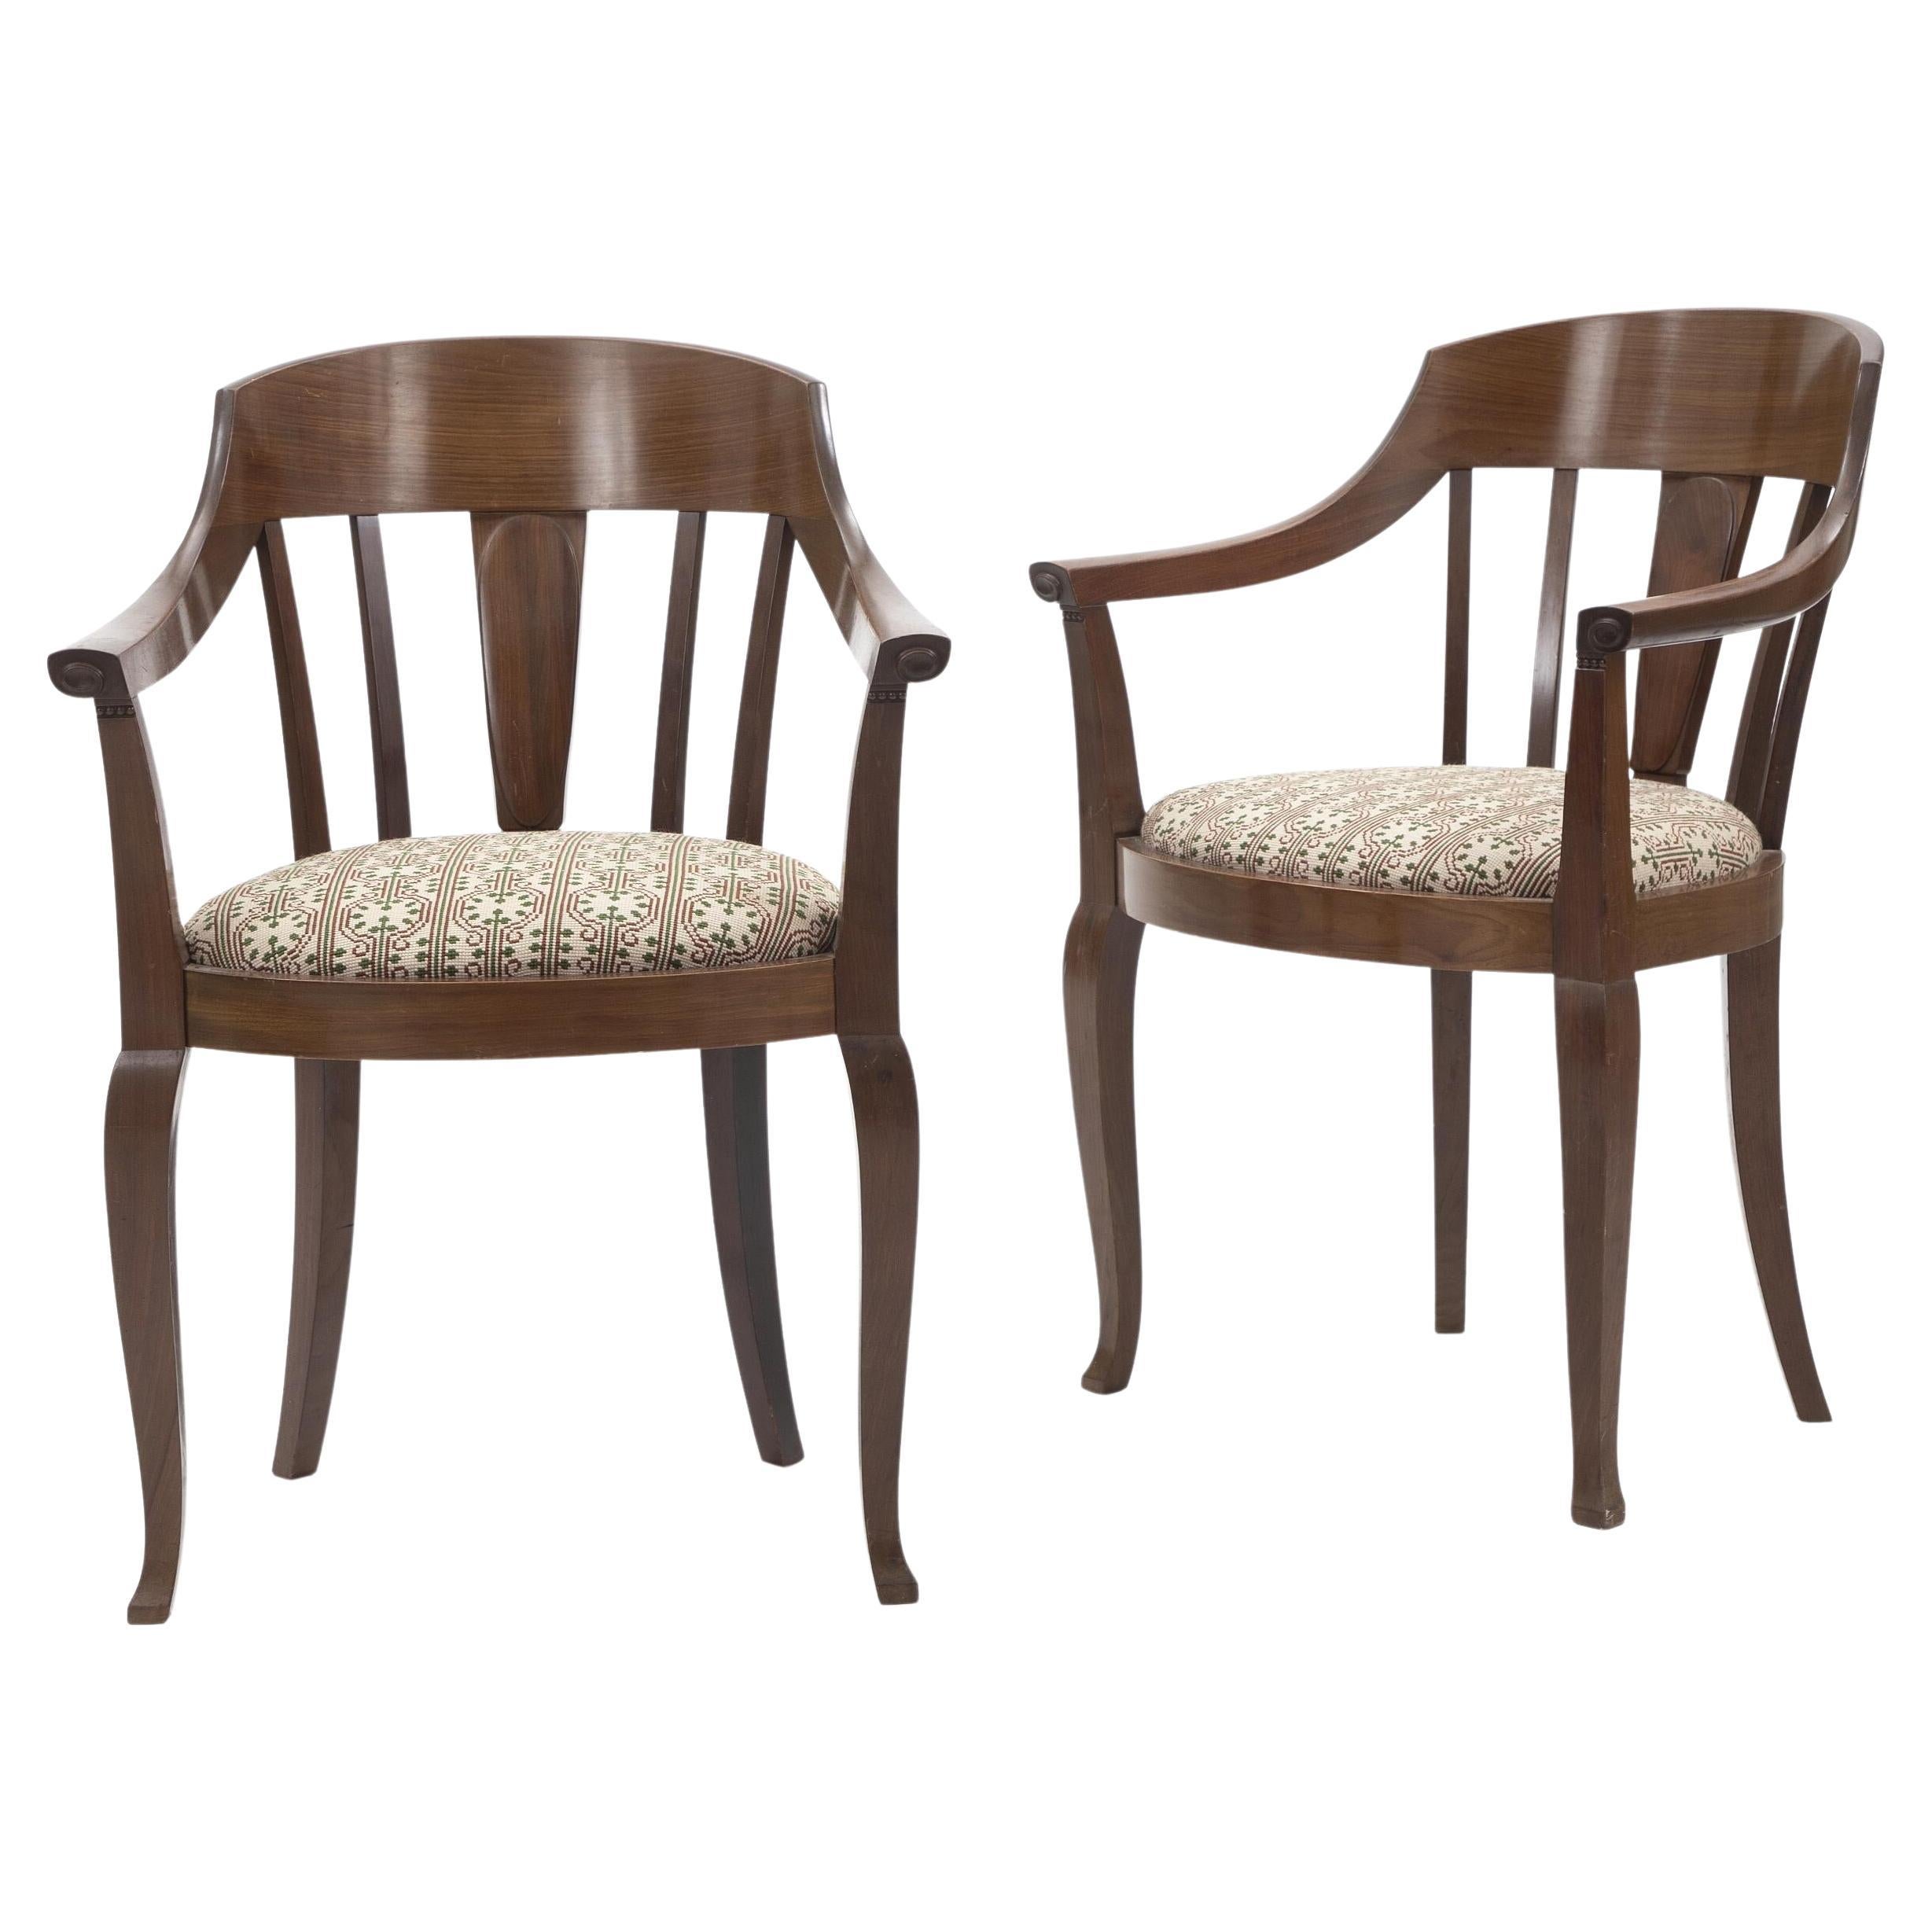 Johan Rohde Ein Paar Stühle mit Mahagoni-Rahmen. 1900-1910